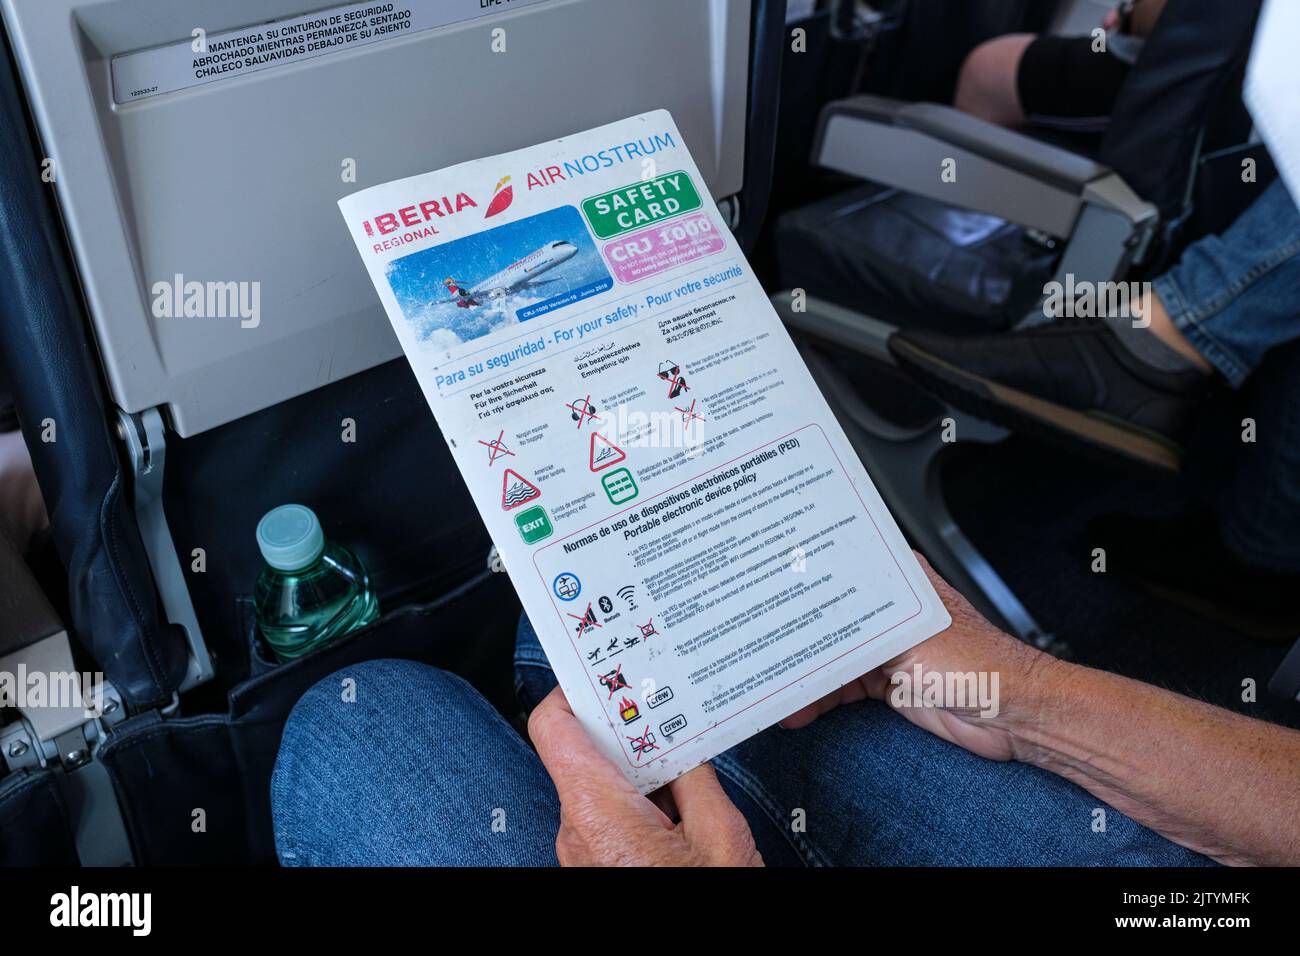 Passager lisant les informations de la carte de sécurité lors d'un voyage en avion de Madrid à grenade, à bord d'un avion Bombardier CRJ1000, en Espagne Banque D'Images